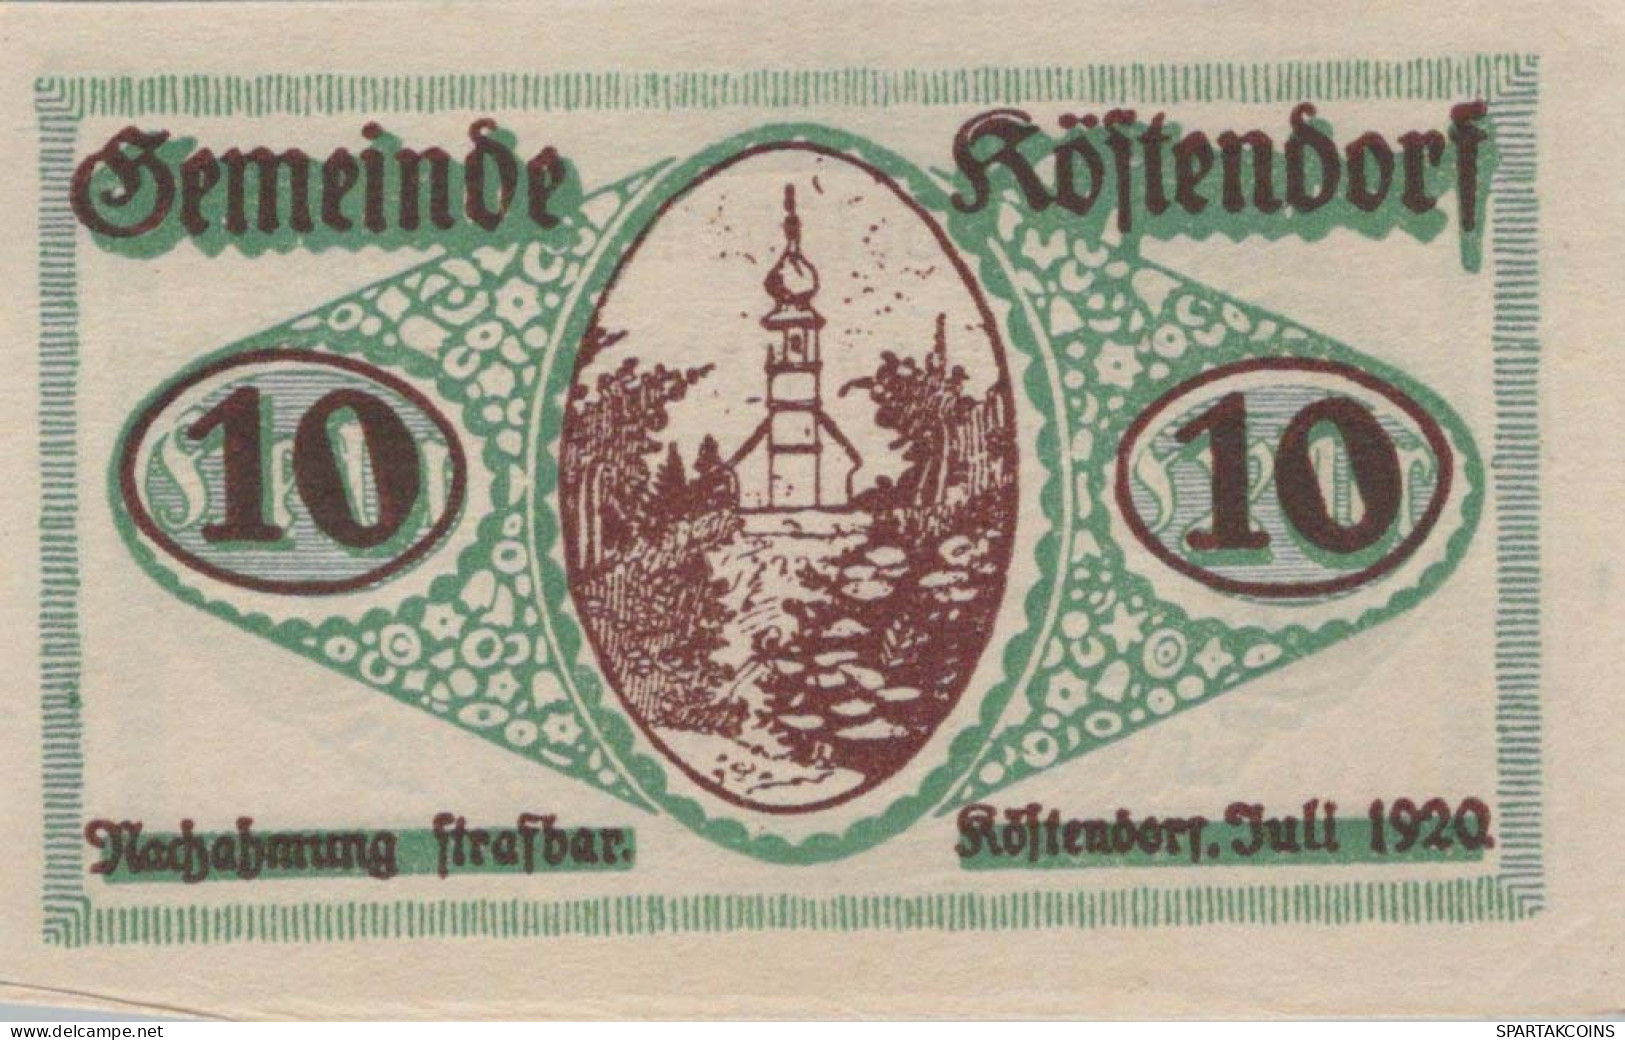 10 HELLER 1920 Stadt KoSTENDORF Salzburg Österreich Notgeld Banknote #PD647 - Lokale Ausgaben